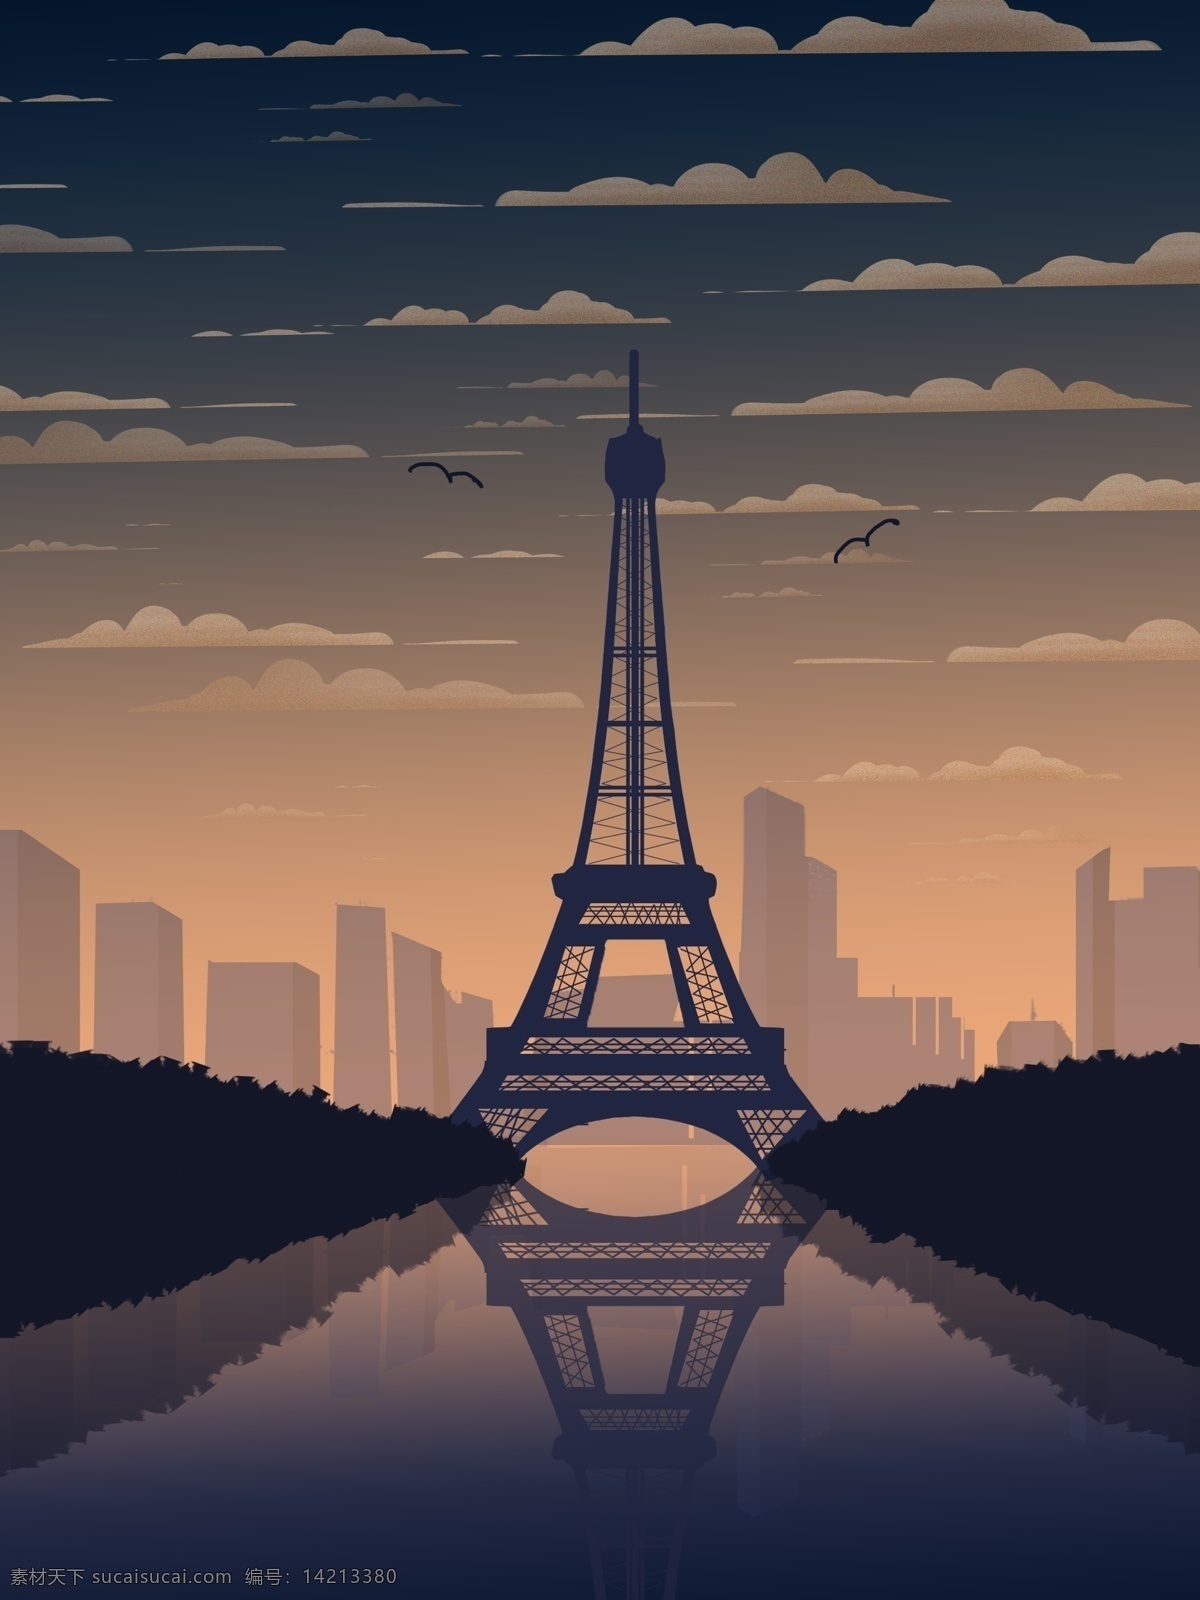 印象 法国 巴黎埃菲尔铁塔 渐变 城市 风光 埃菲尔铁塔 城市建筑 城市剪影 banner 渐变背景 浪漫之都 h5 高清壁纸 巴黎